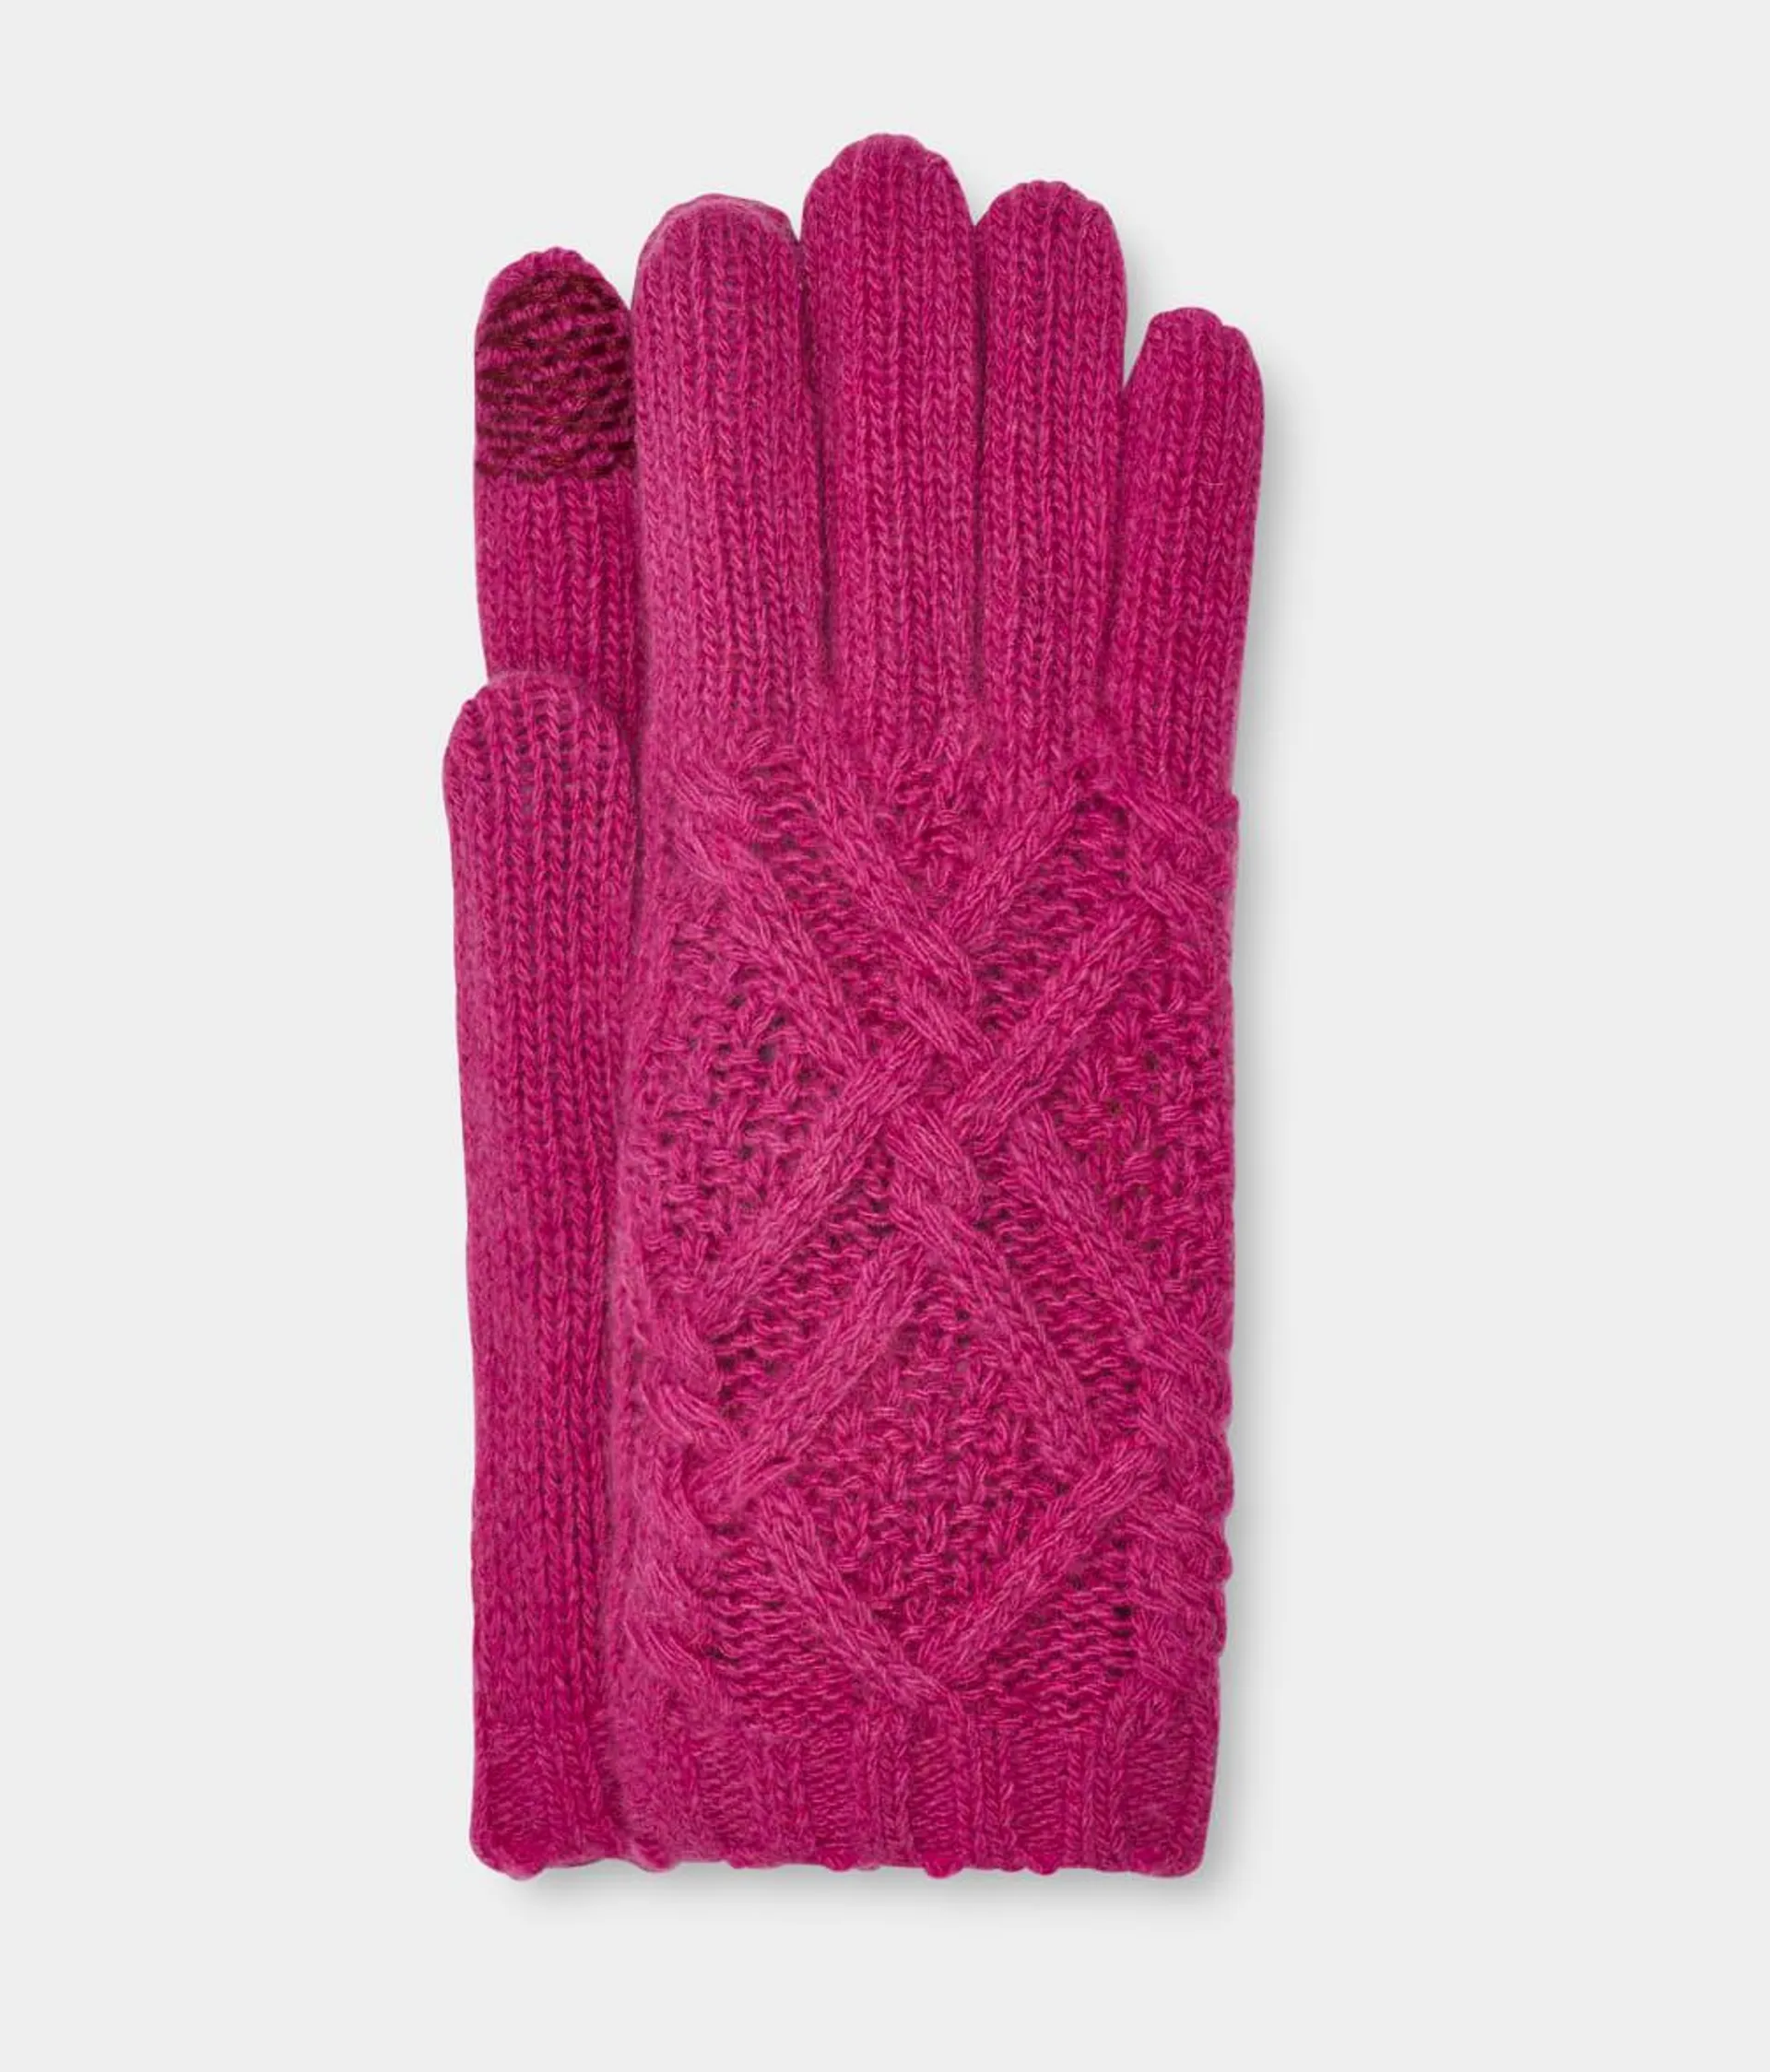 Desmond Cable Knit Glove